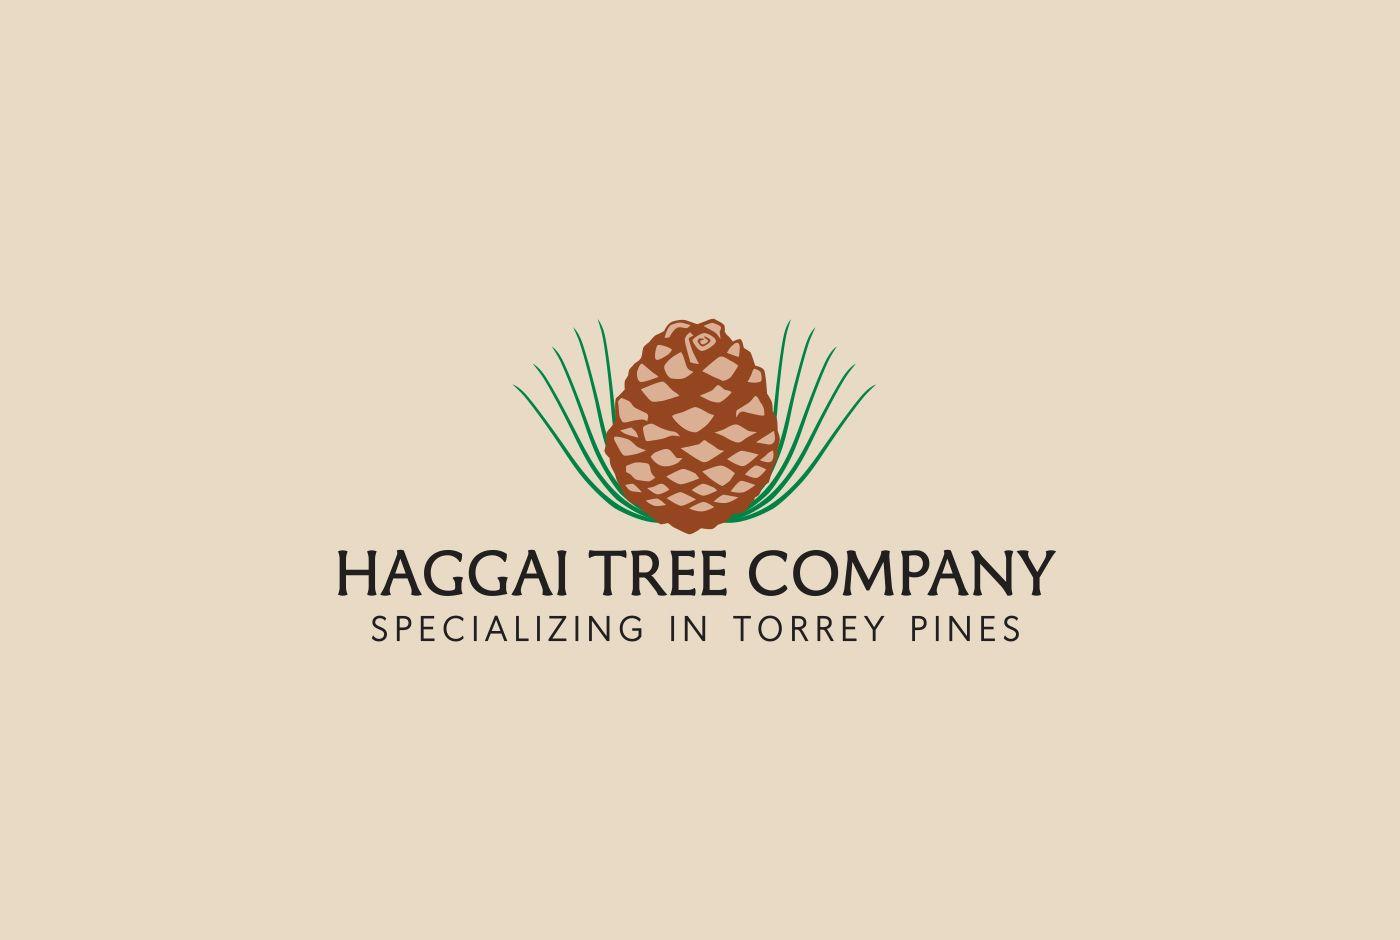 Pine Tree Company Logo - Haggai Tree Company logo